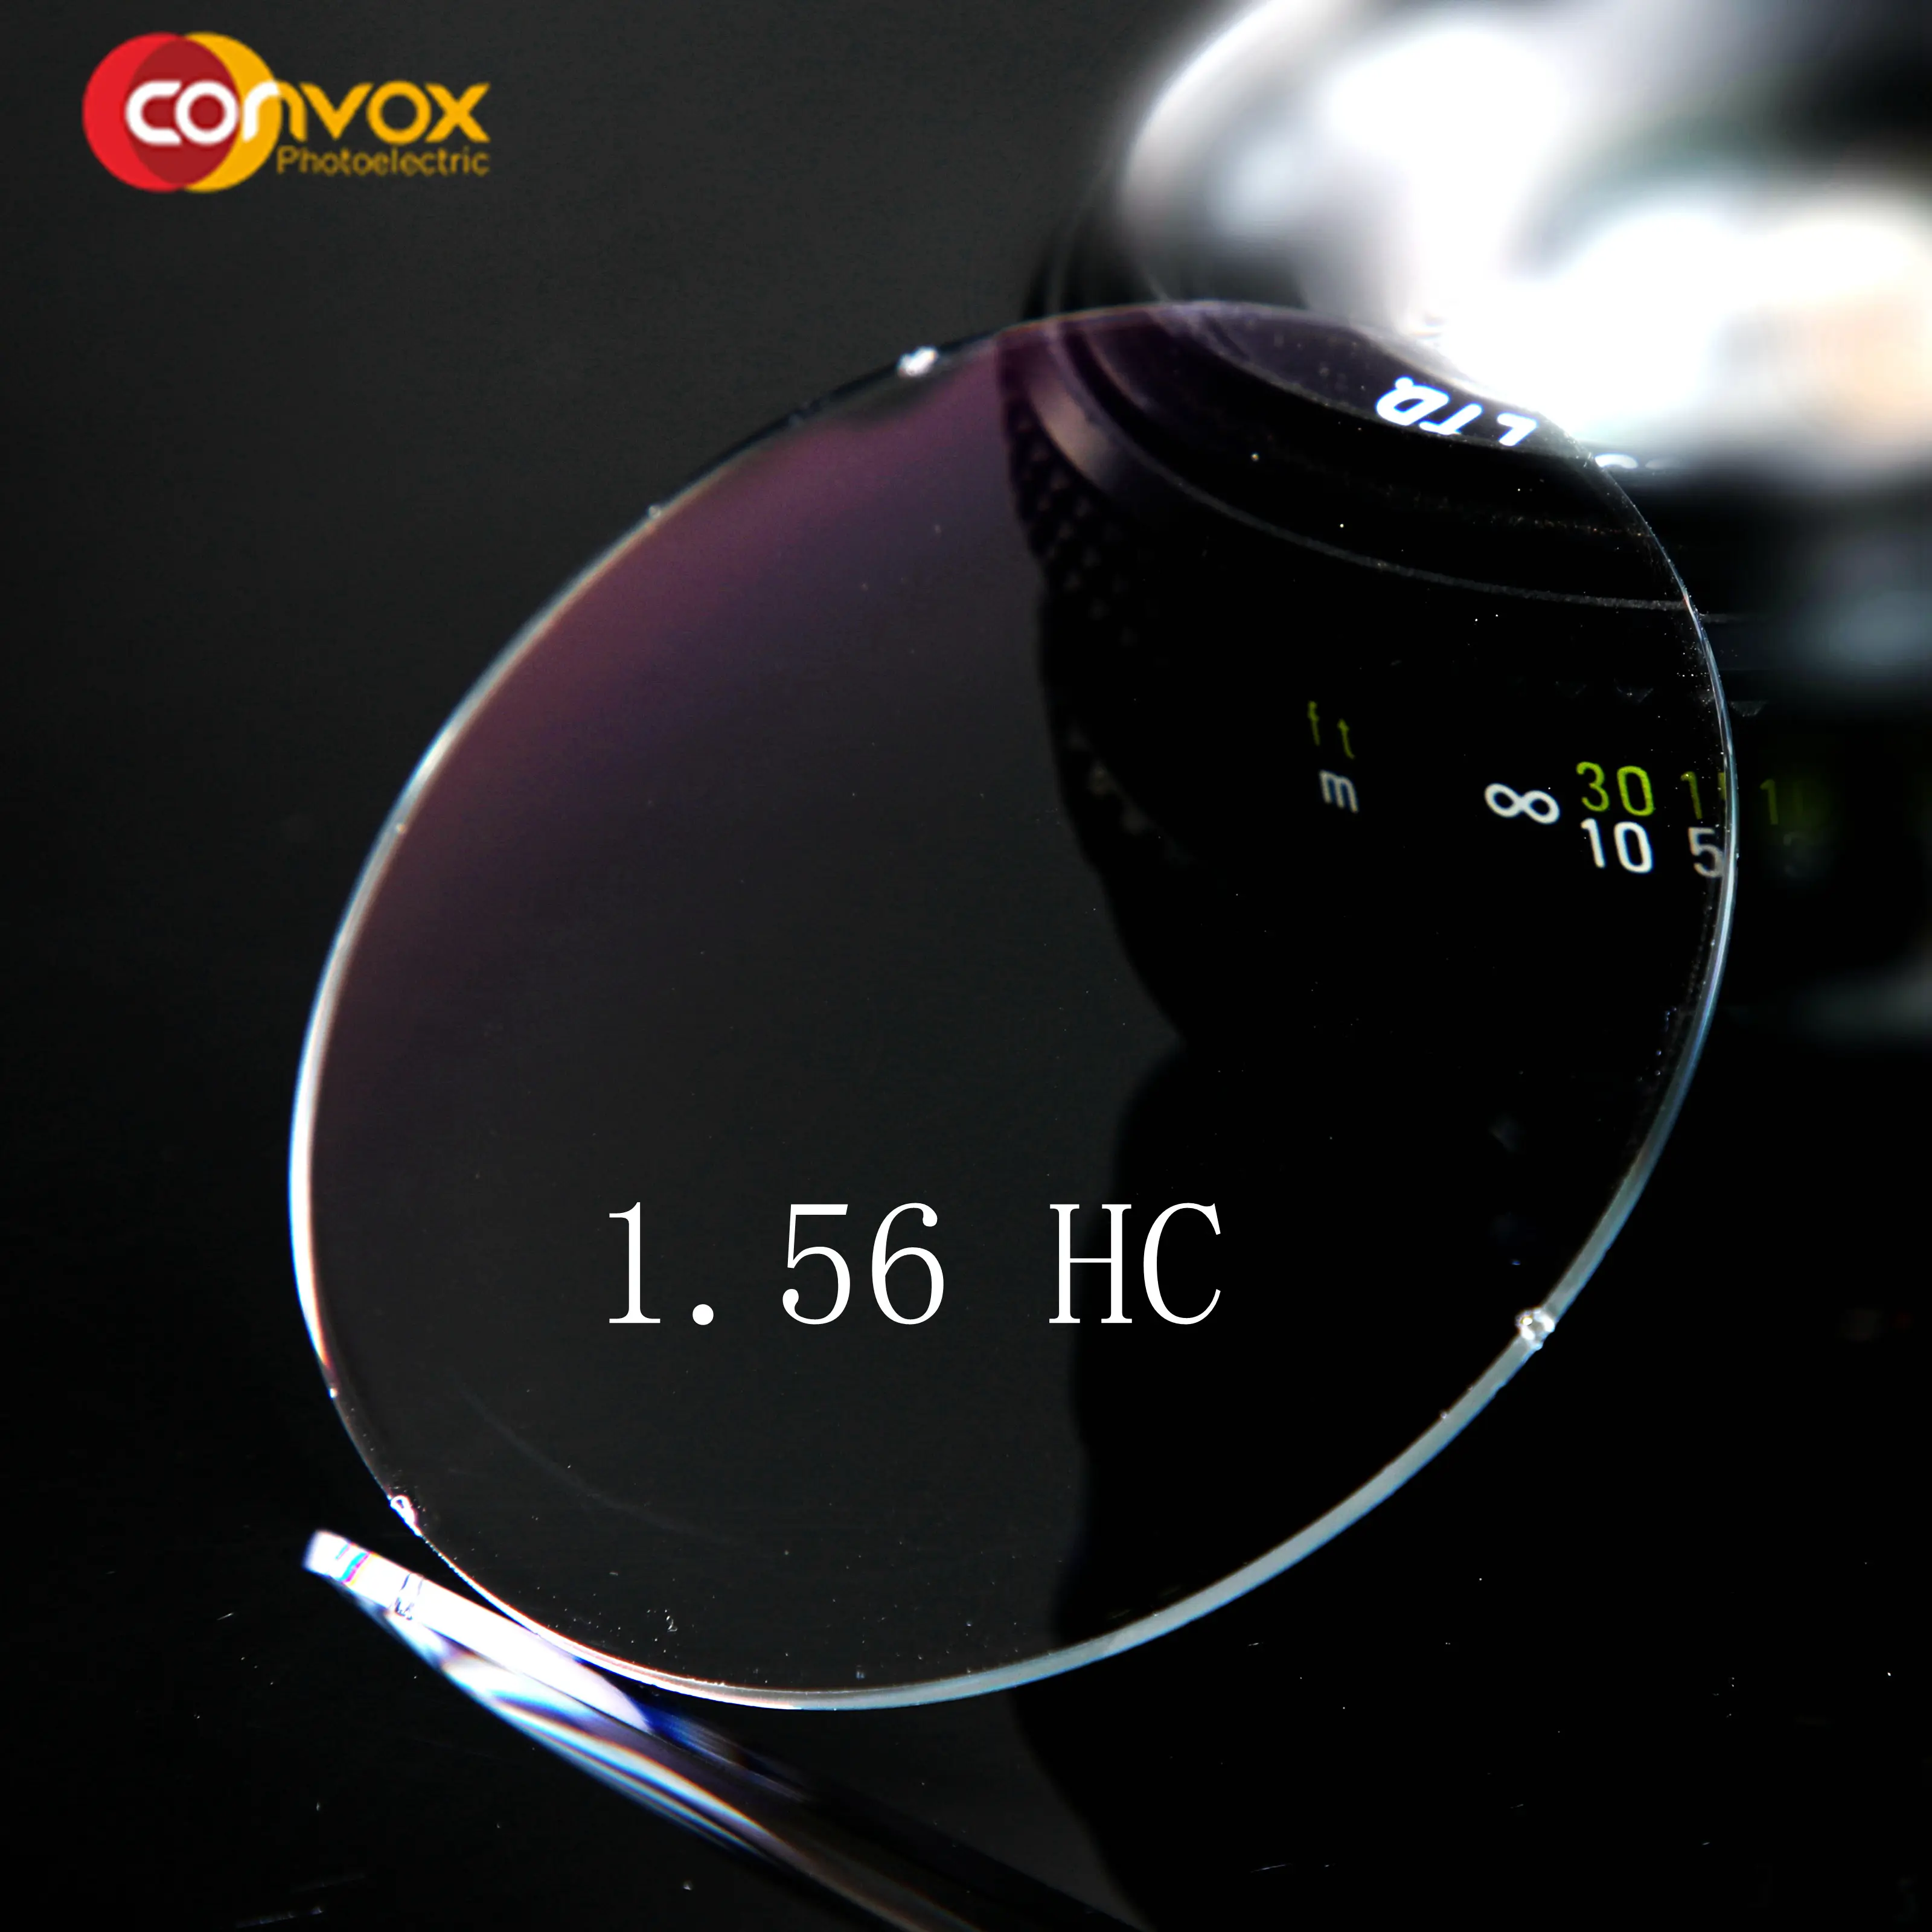 Оптический Объектив Convox Classic cr hard coat 1,56 hc